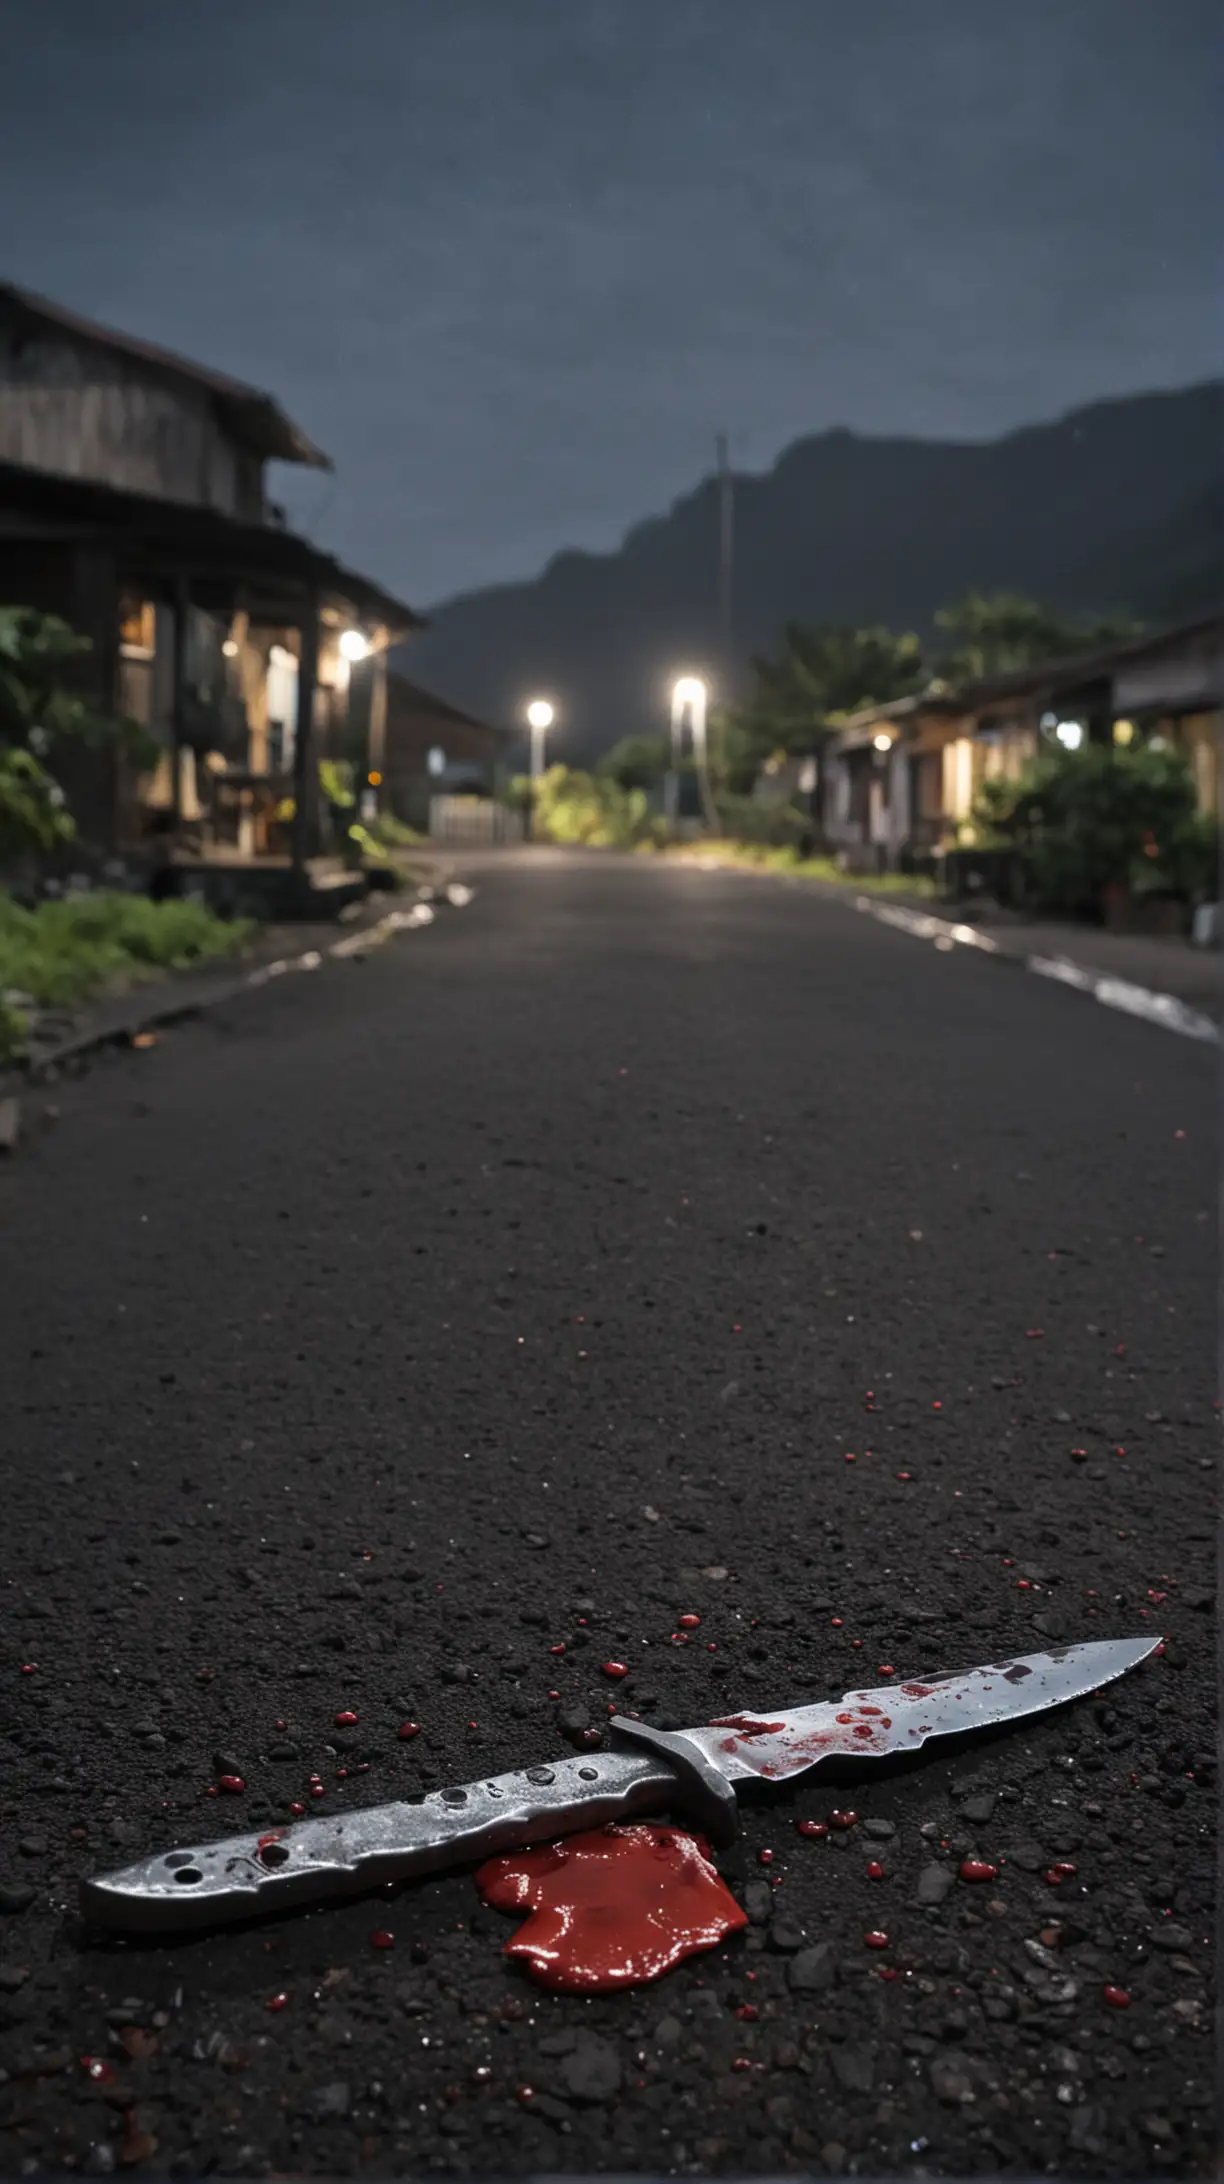 Ambiance de l'ile de la Réunion village glauque de nuit.

Avec un couteau plein de sang au premier plan